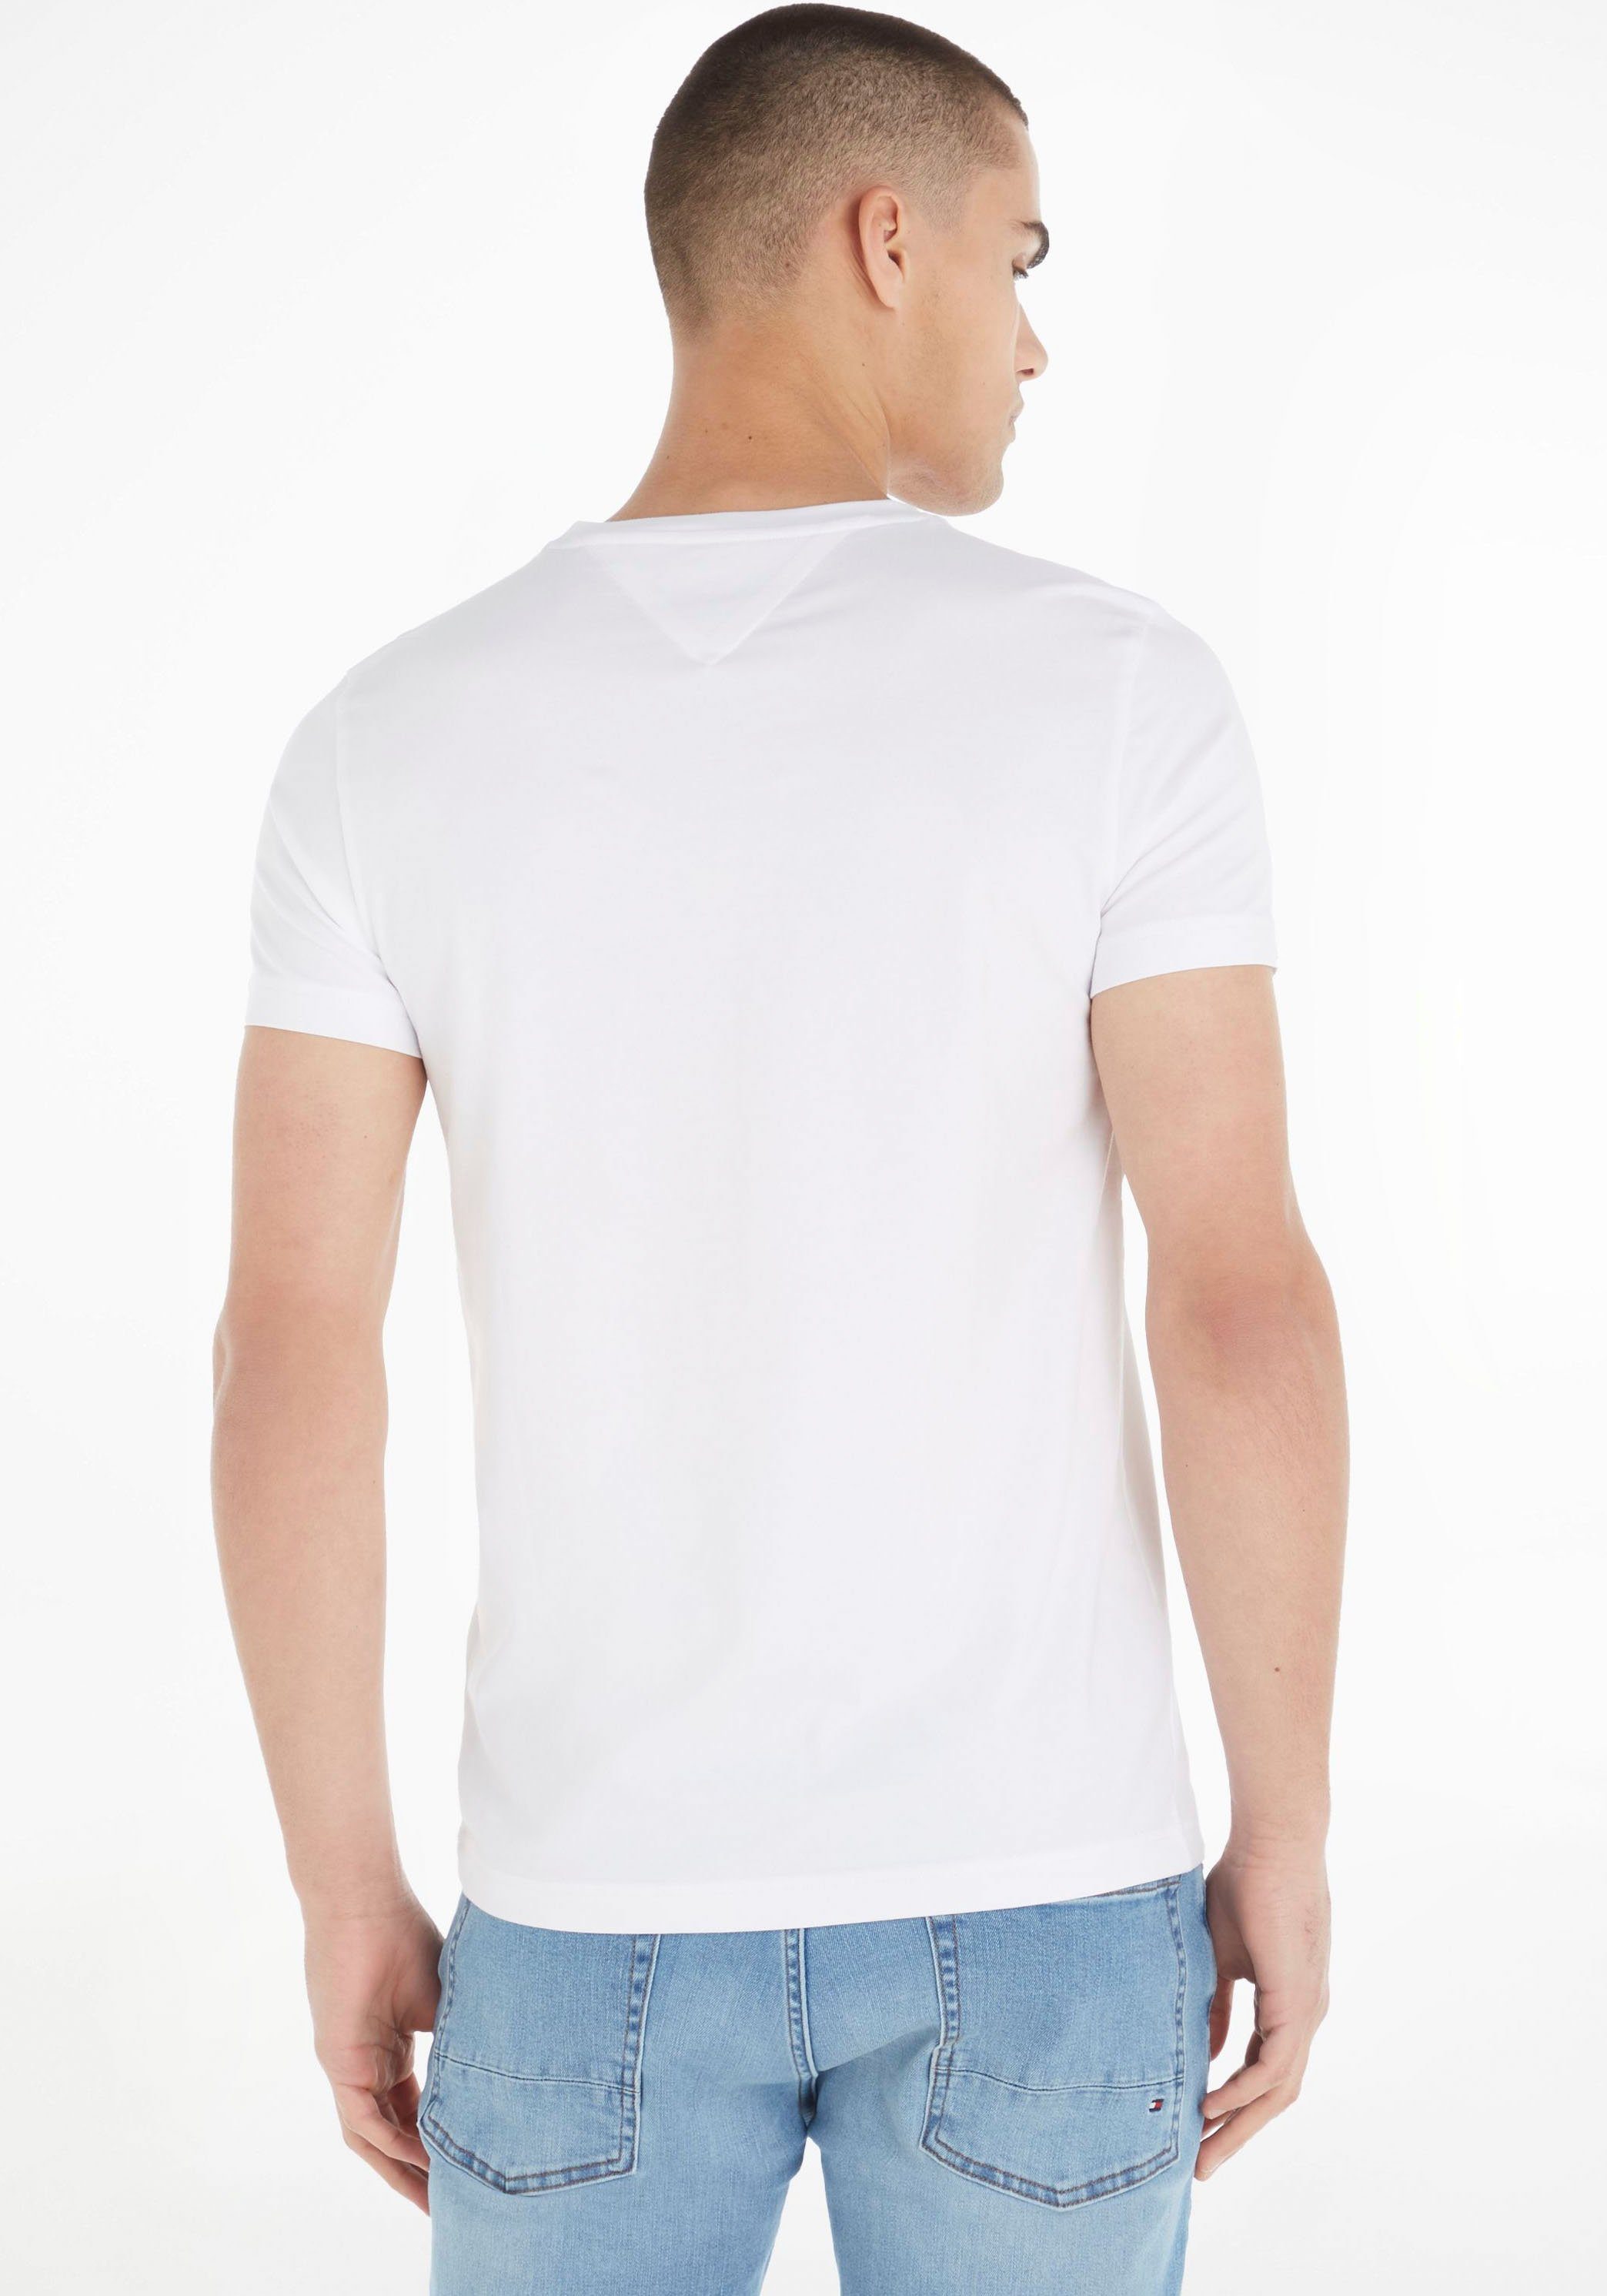 Hilfiger V-Shirt T-Shirt Stretch Tommy white Slim